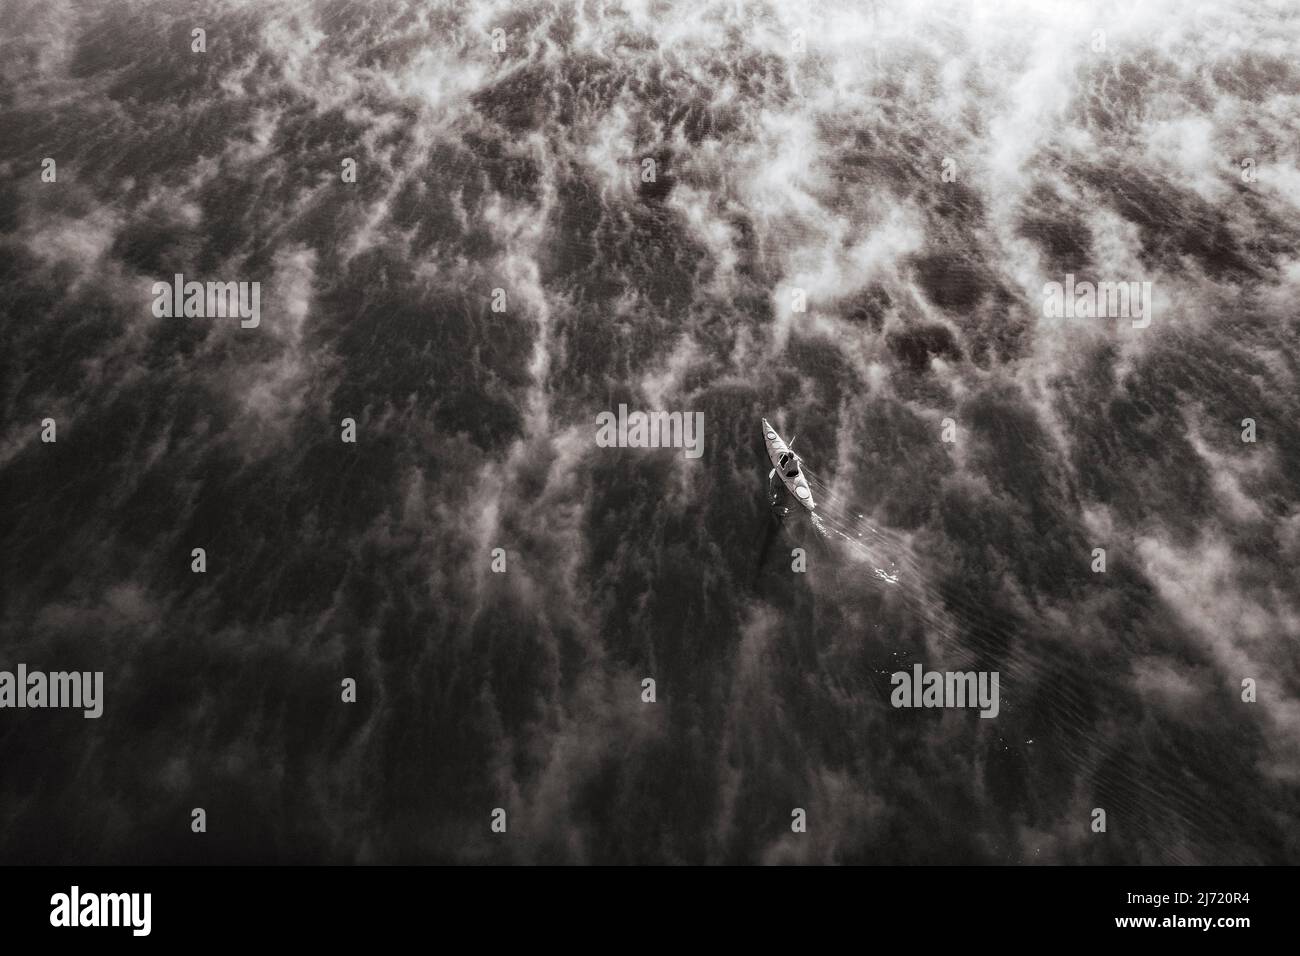 Sepafarben, Kanufahrer am Irrsee zwischen Nebelschwaden, Bodennebel, von oben, Drohnenaufnahme, Luftaufnahme, Zell am Moos, Salzkammergut Foto Stock